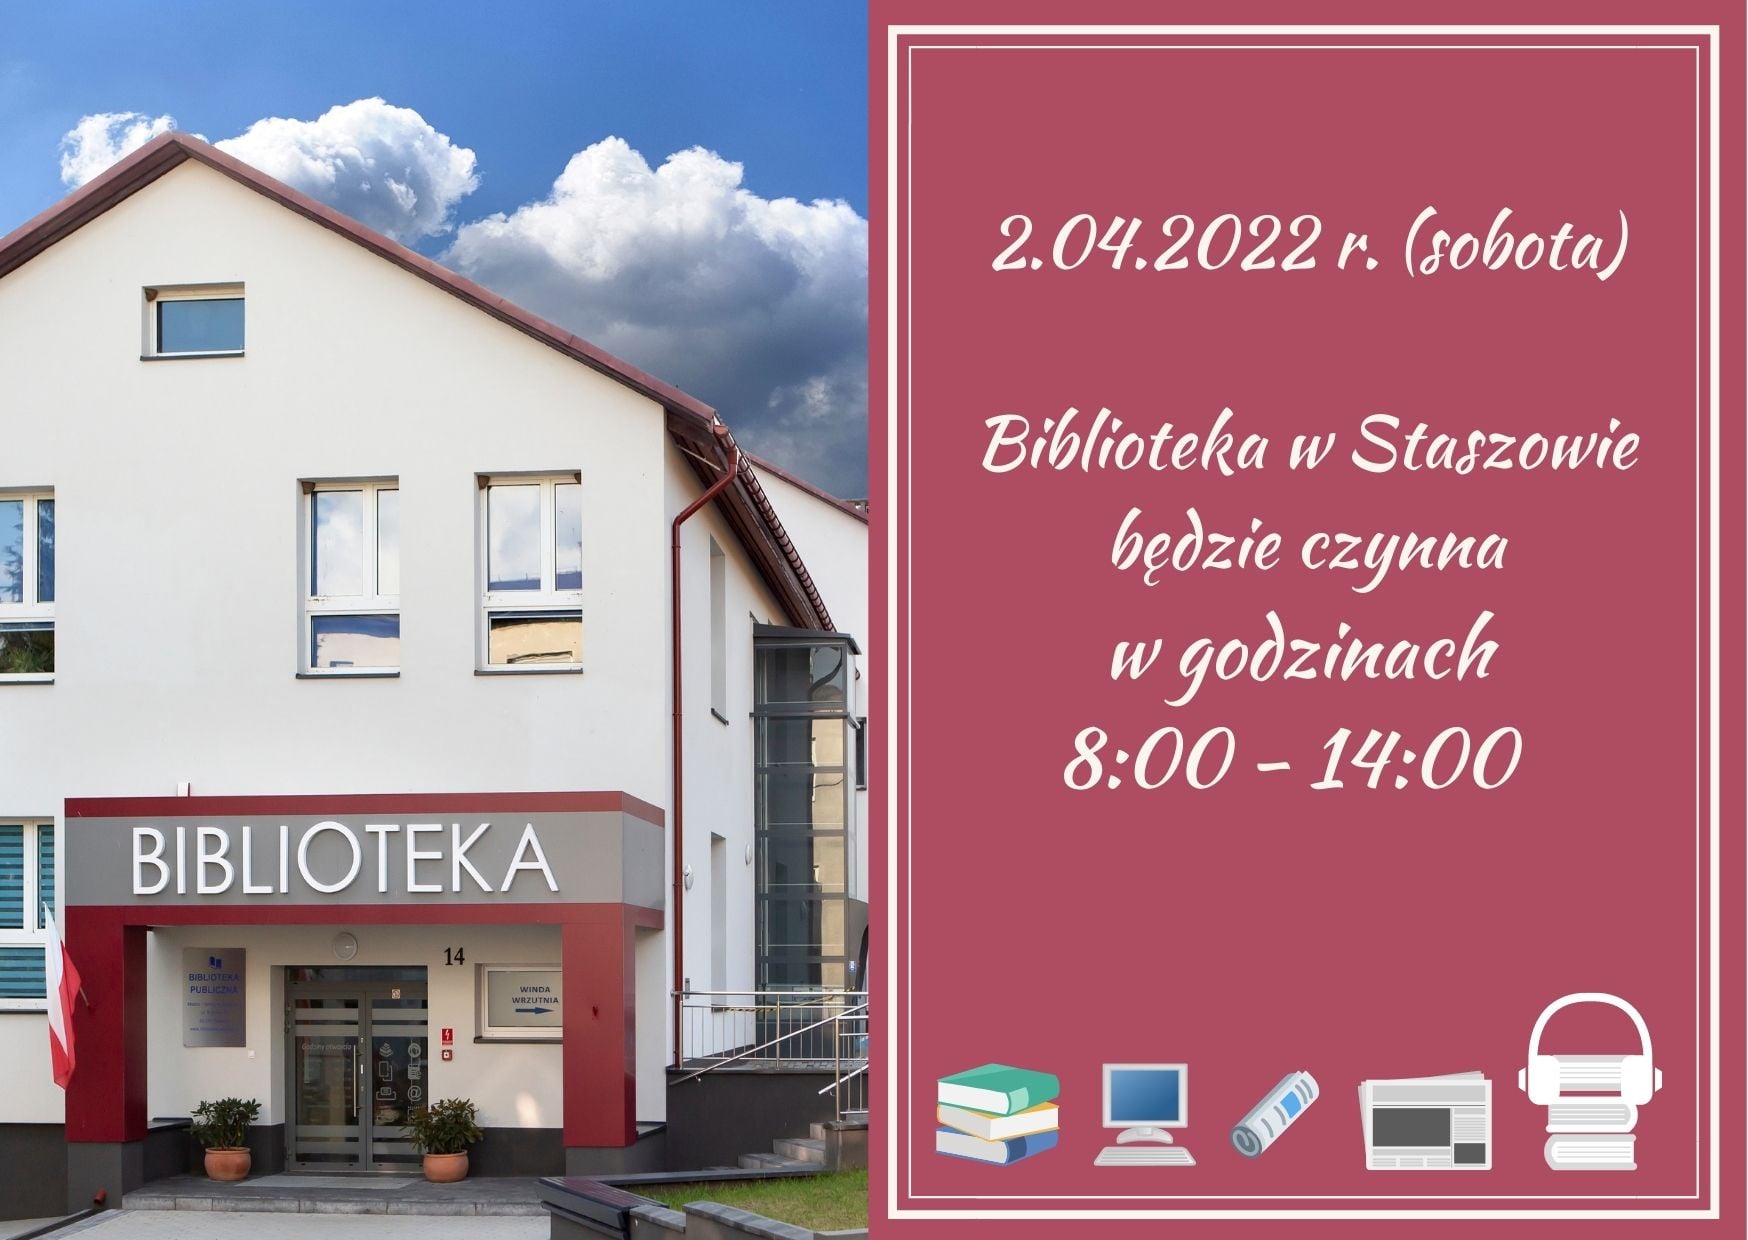 Grafika informacyjna: W sobotę, 2 kwietnia,  Biblioteka w Staszowie będzie czynna w godzinach: 8:00-14:00.